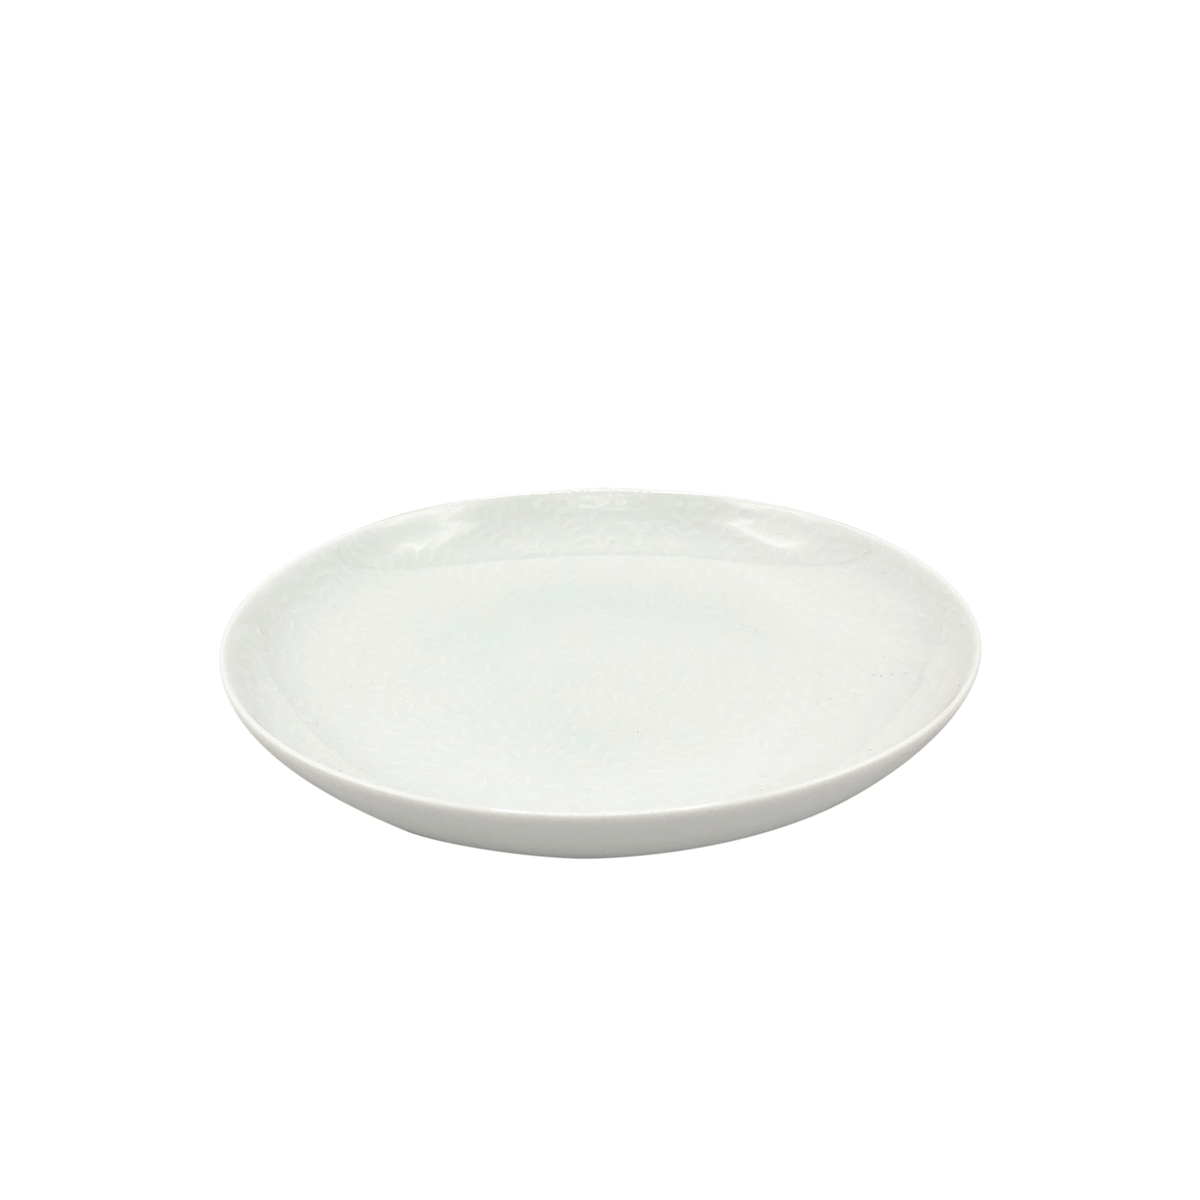 ARJUNA blanc sur blanc - Assiette à pâtes